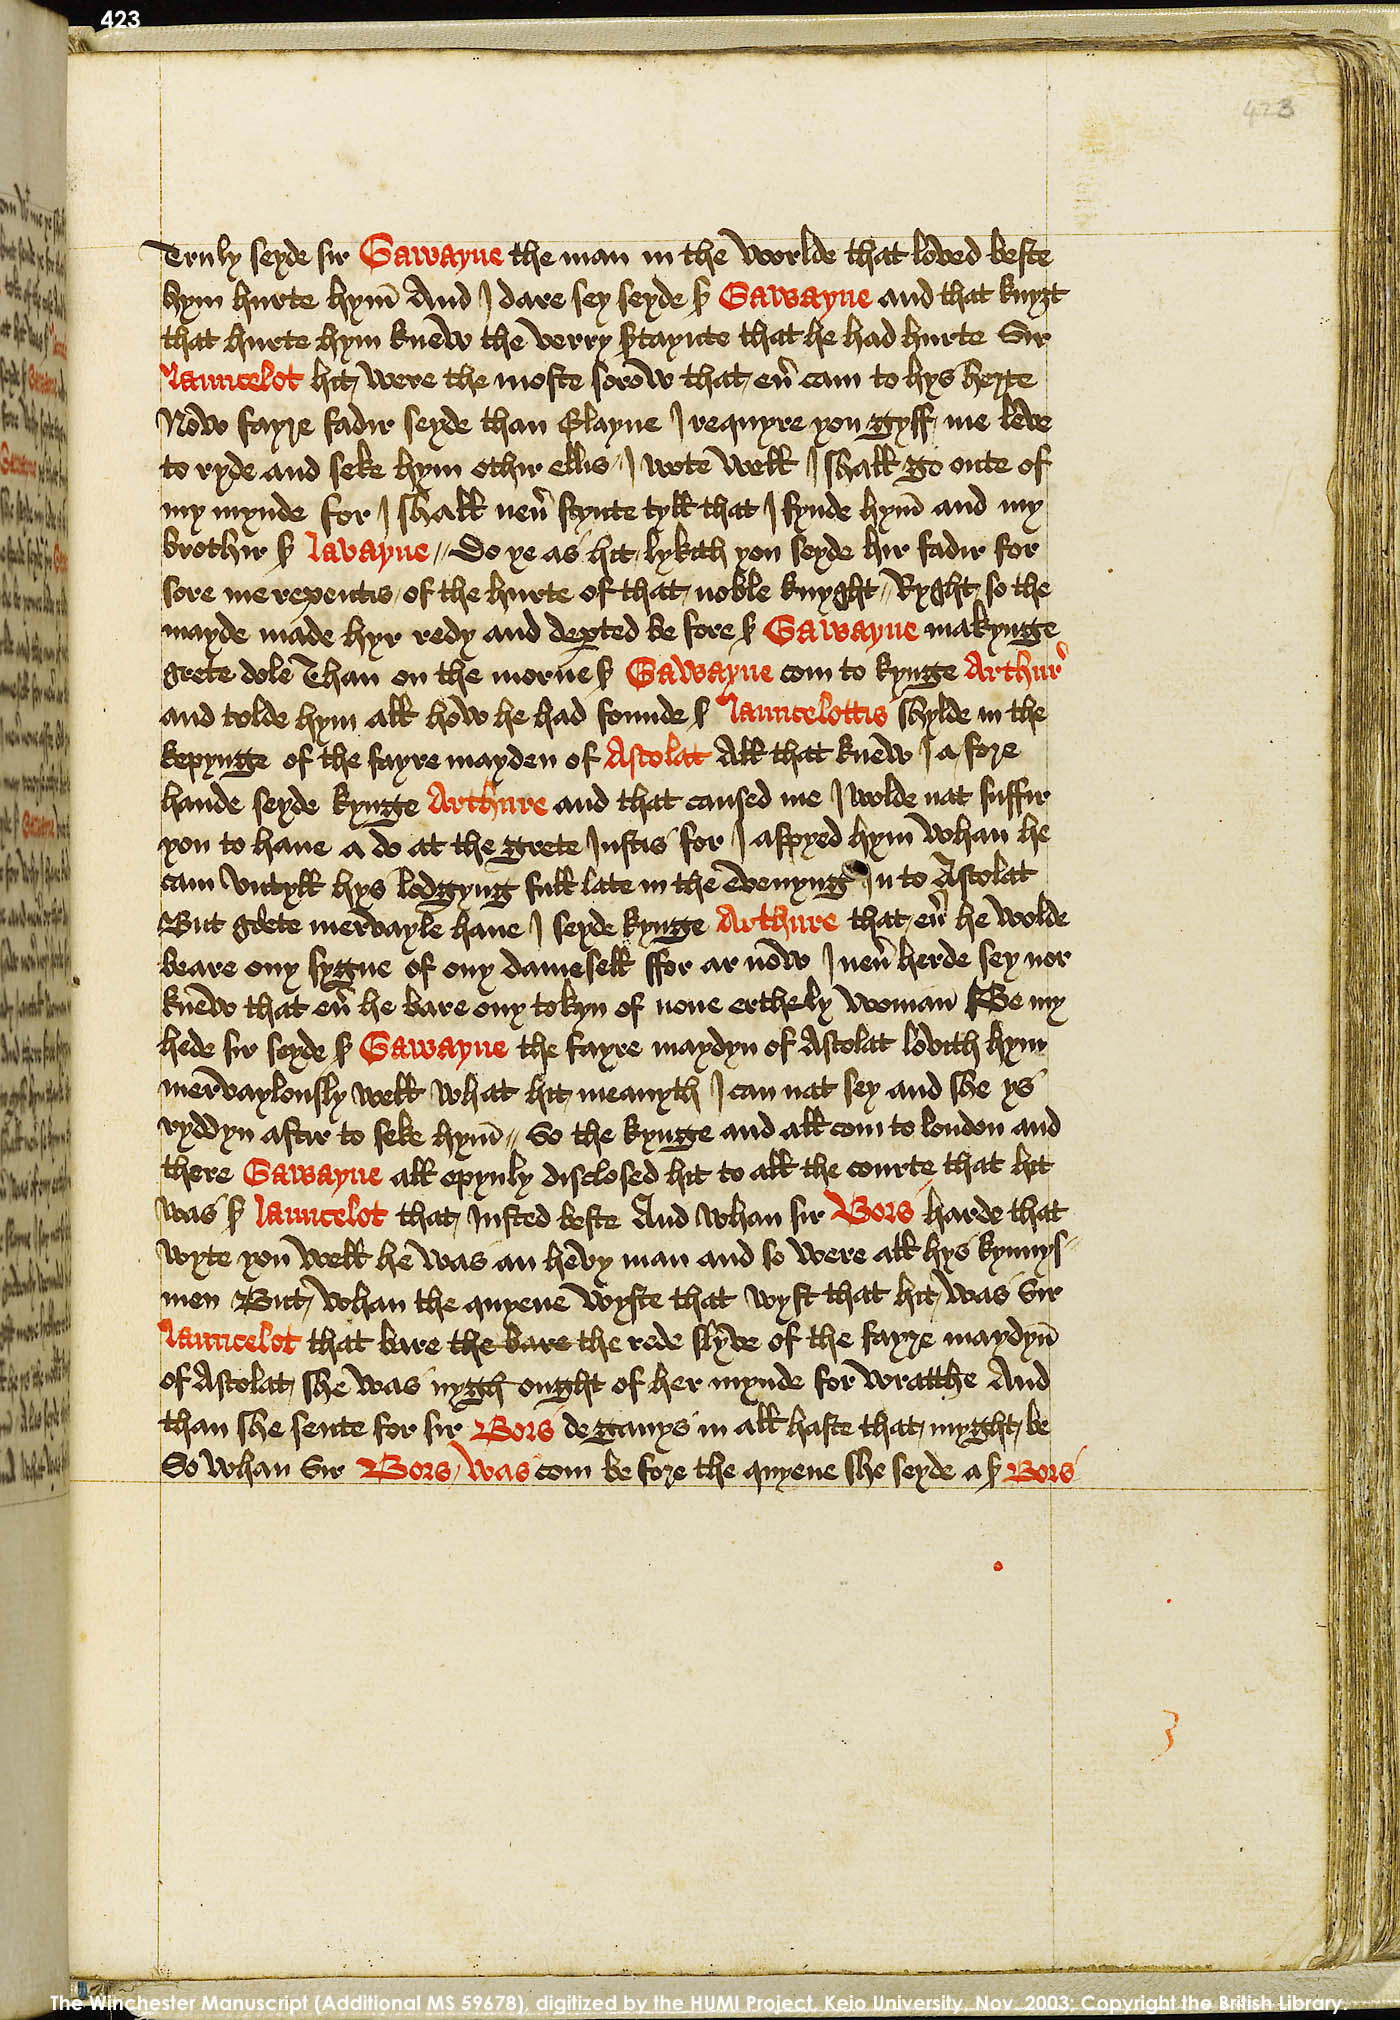 Folio 423r